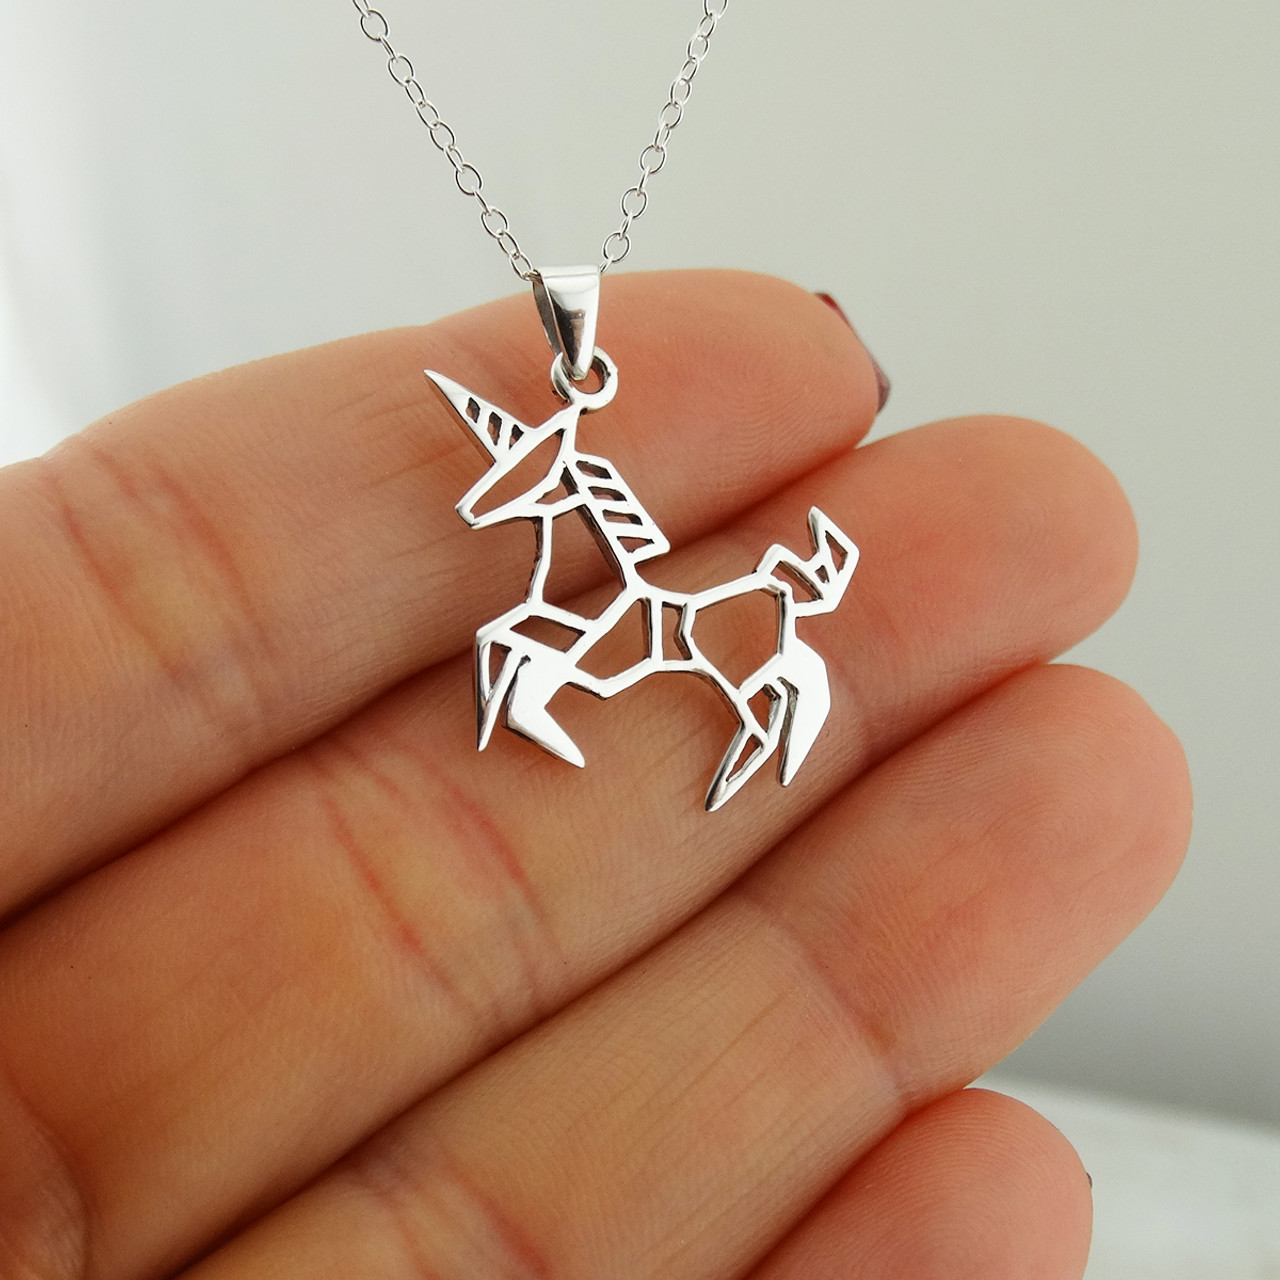 Girls' Fancy Unicorn Sterling Silver Necklace - In Season Jewelry : Target